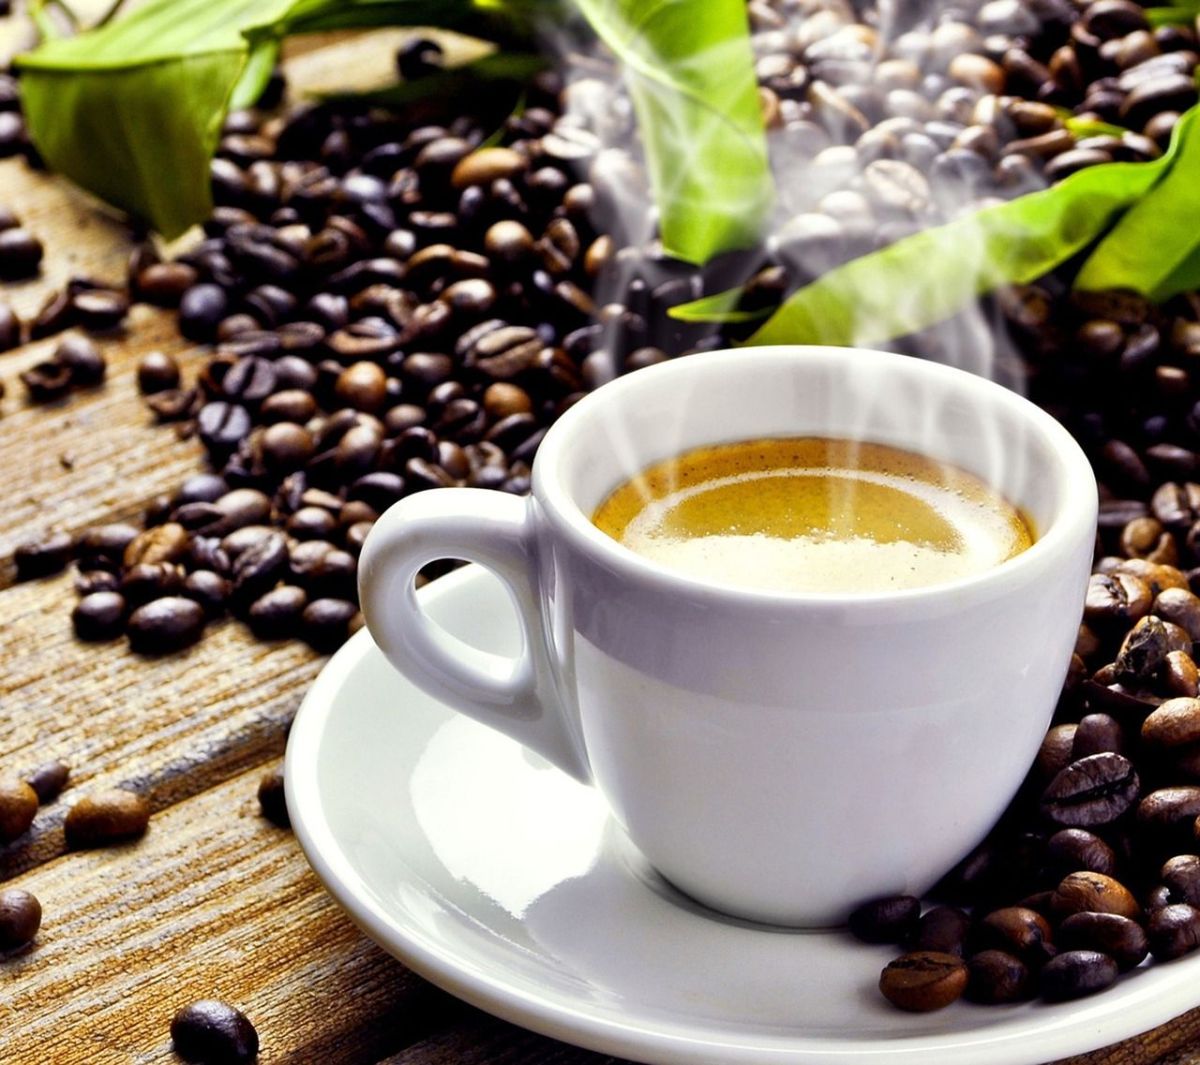 Según un reciente estudio, beber café en exceso se relaciona con alteraciones en el colesterol y se deriva en posibles afectaciones cardíacas.